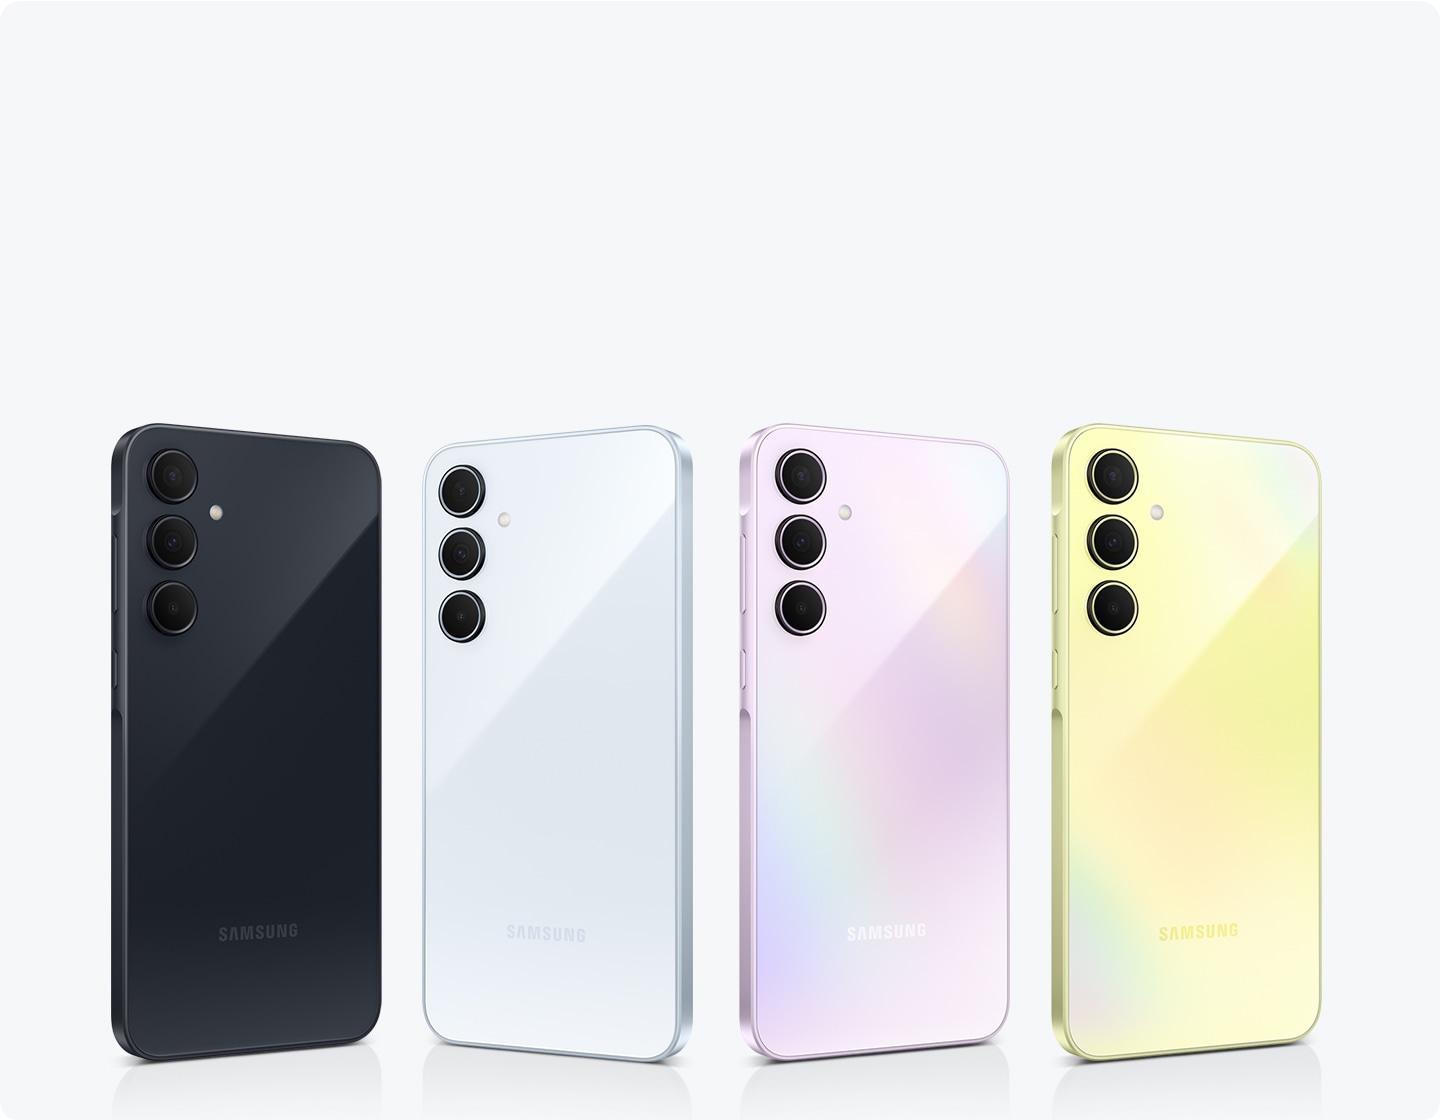 Čtyři smartphony Samsung v řadě s různými barvami: Awesome Navy, Awesome Iceblue, Awesome Lilac a Awesome Lemon. Každý telefon má na zadní straně rozložení se 3 fotoaparáty.